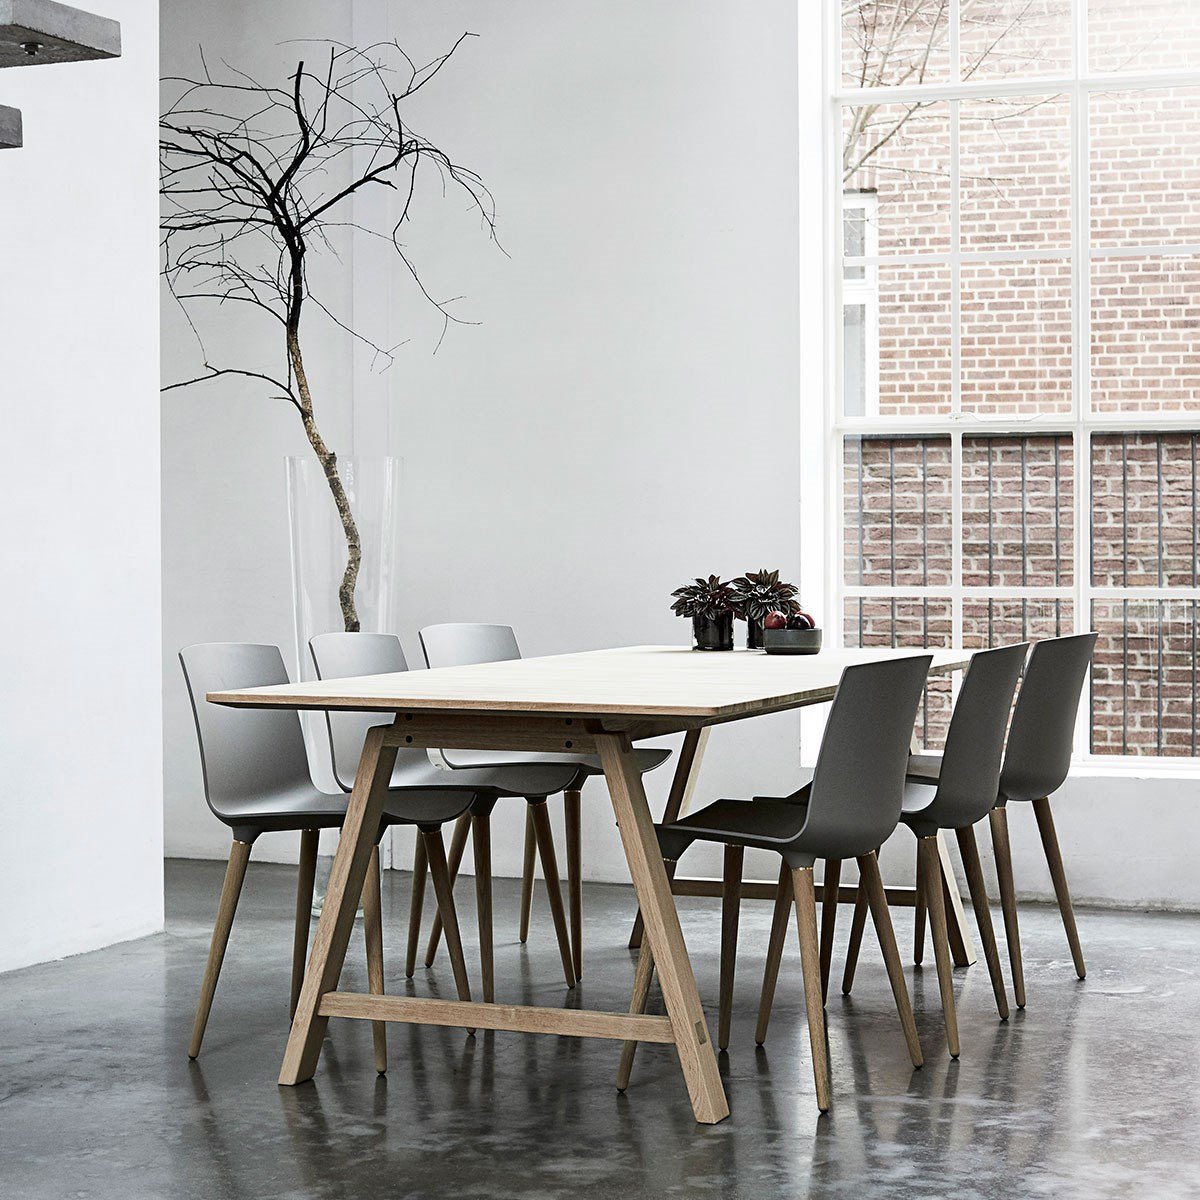 Andersen Furniture T1 udtræksbord, hvid laminat, sæbebehandlet eg, 220 cm